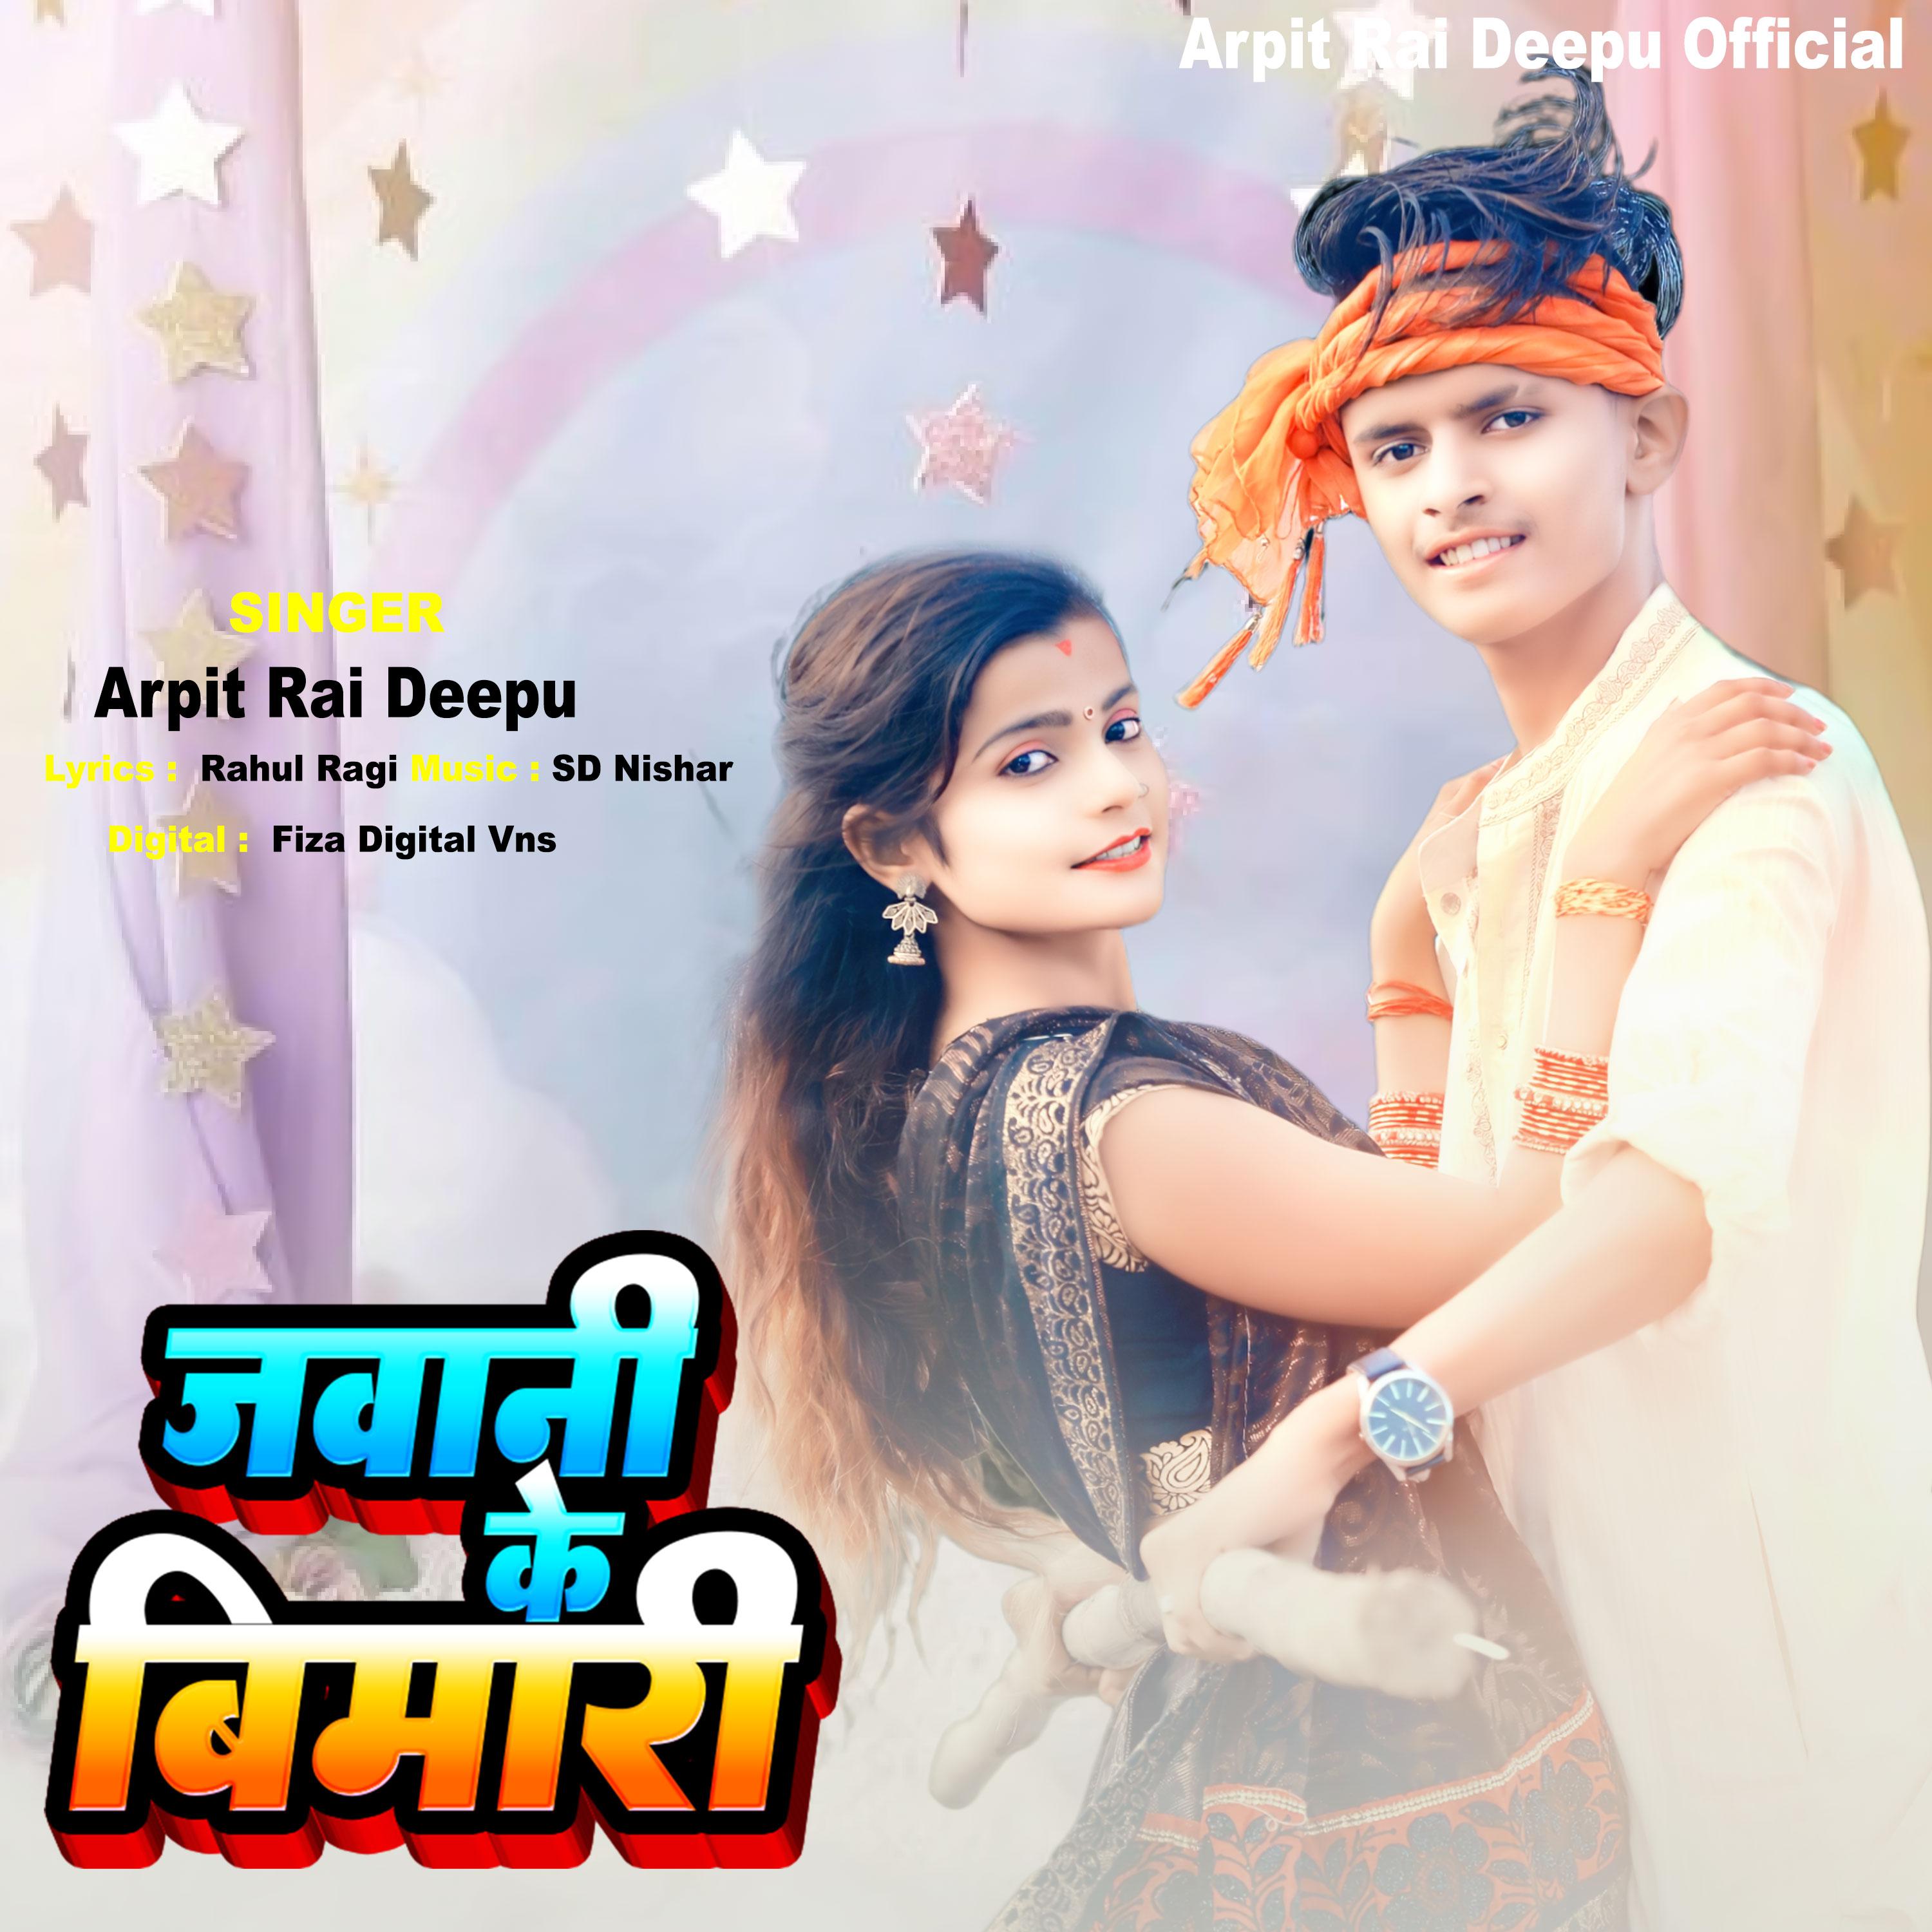 Постер альбома Arpit Rai Deepu Official